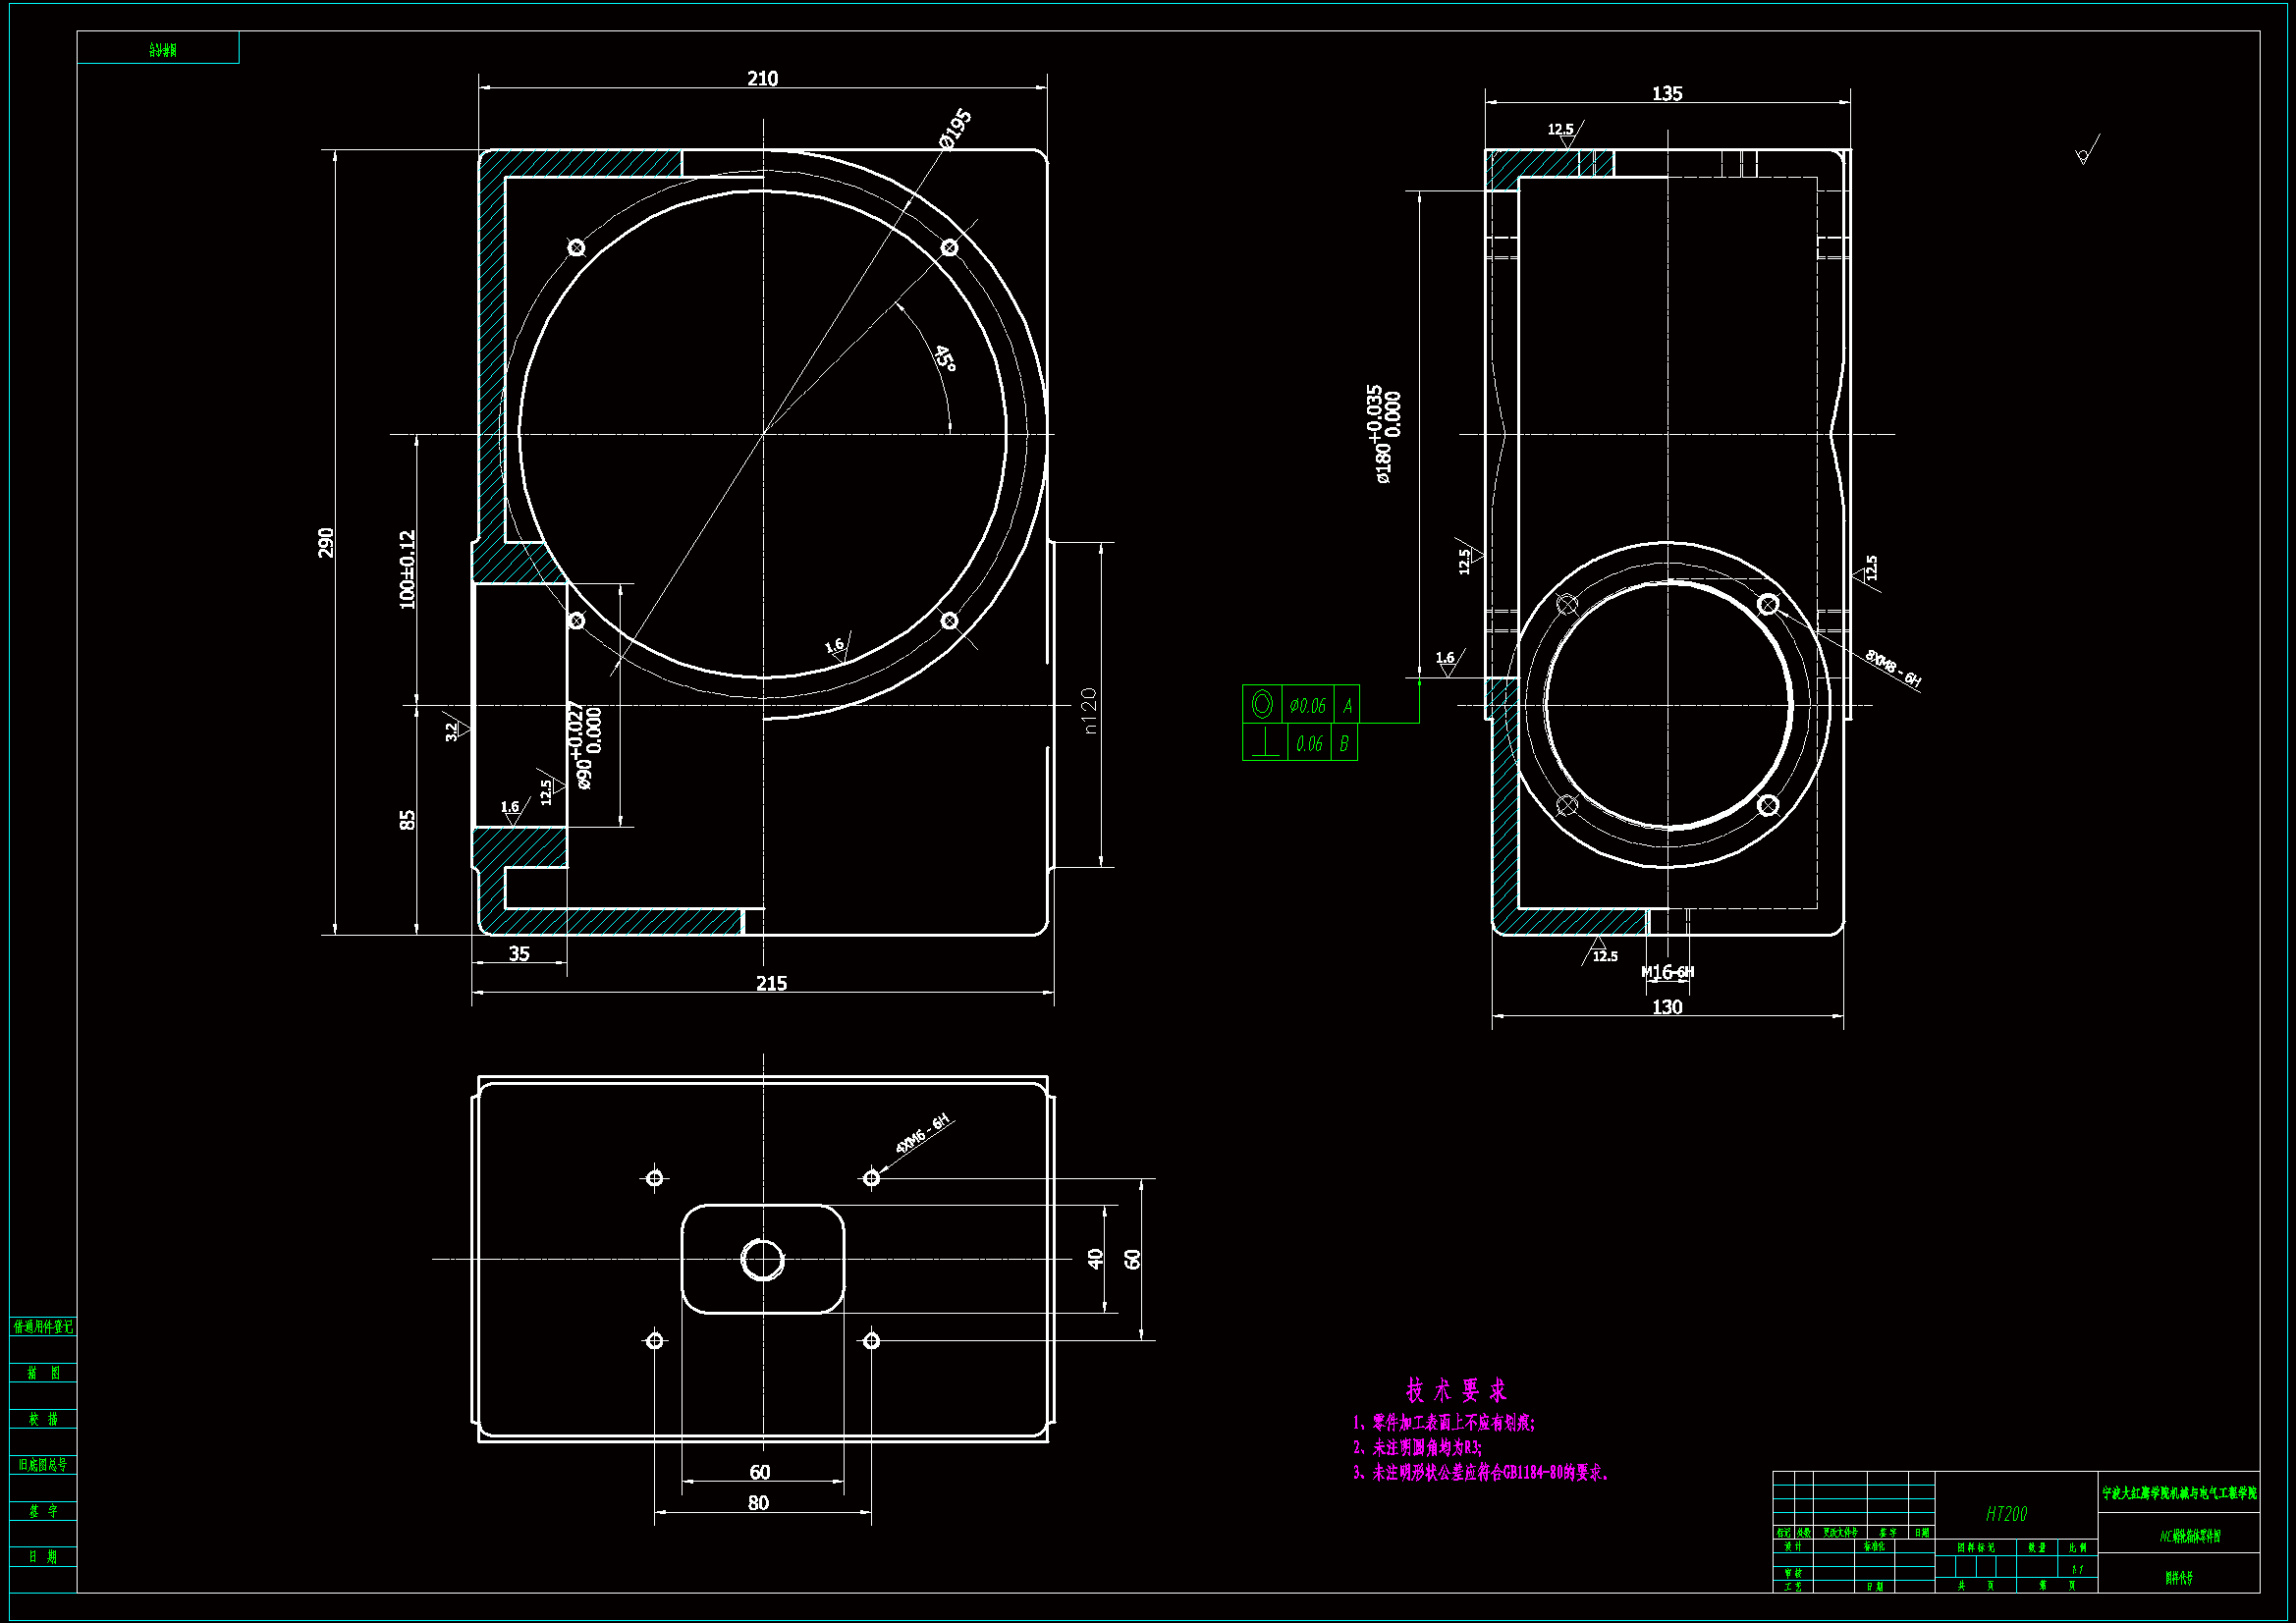 GJ284-NC蜗轮箱体工艺和钻4-M6孔夹具设计【小型蜗轮减速器箱体】【含8张CAD图纸】.zip